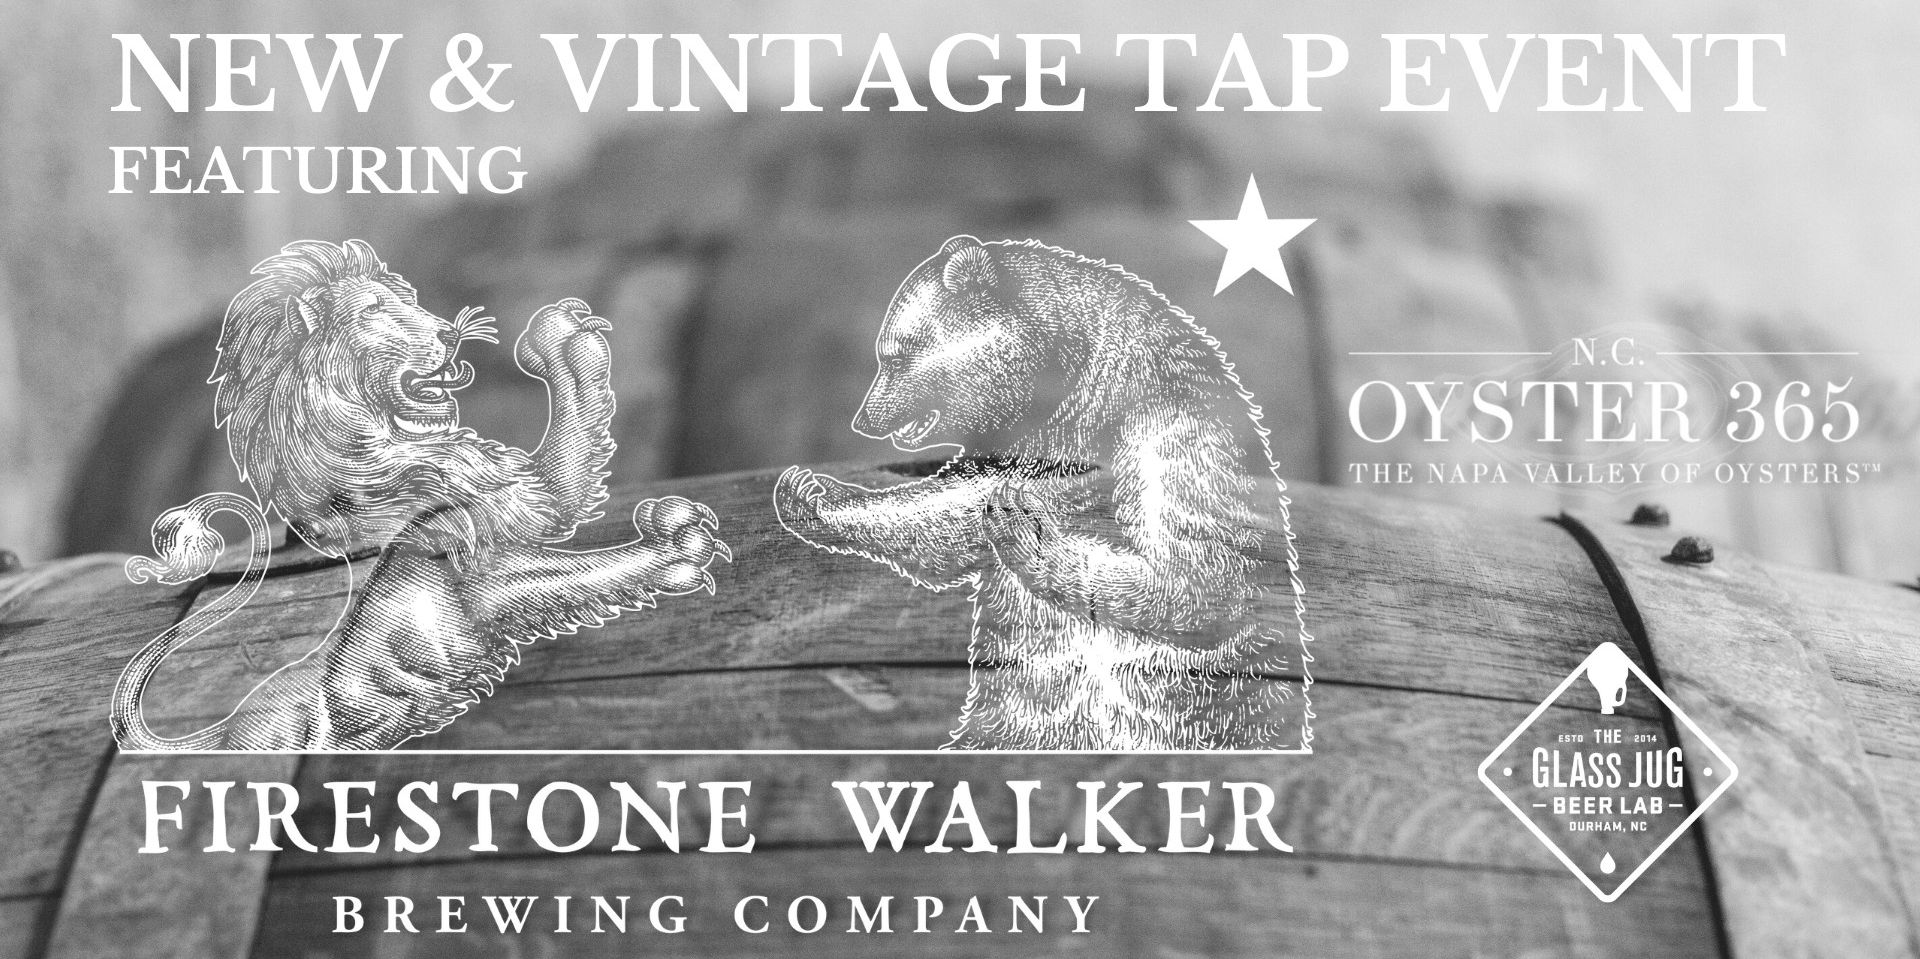 Firestone Walker New & Vintage Tap Event w/Oyster Bar Pop-up promotional image